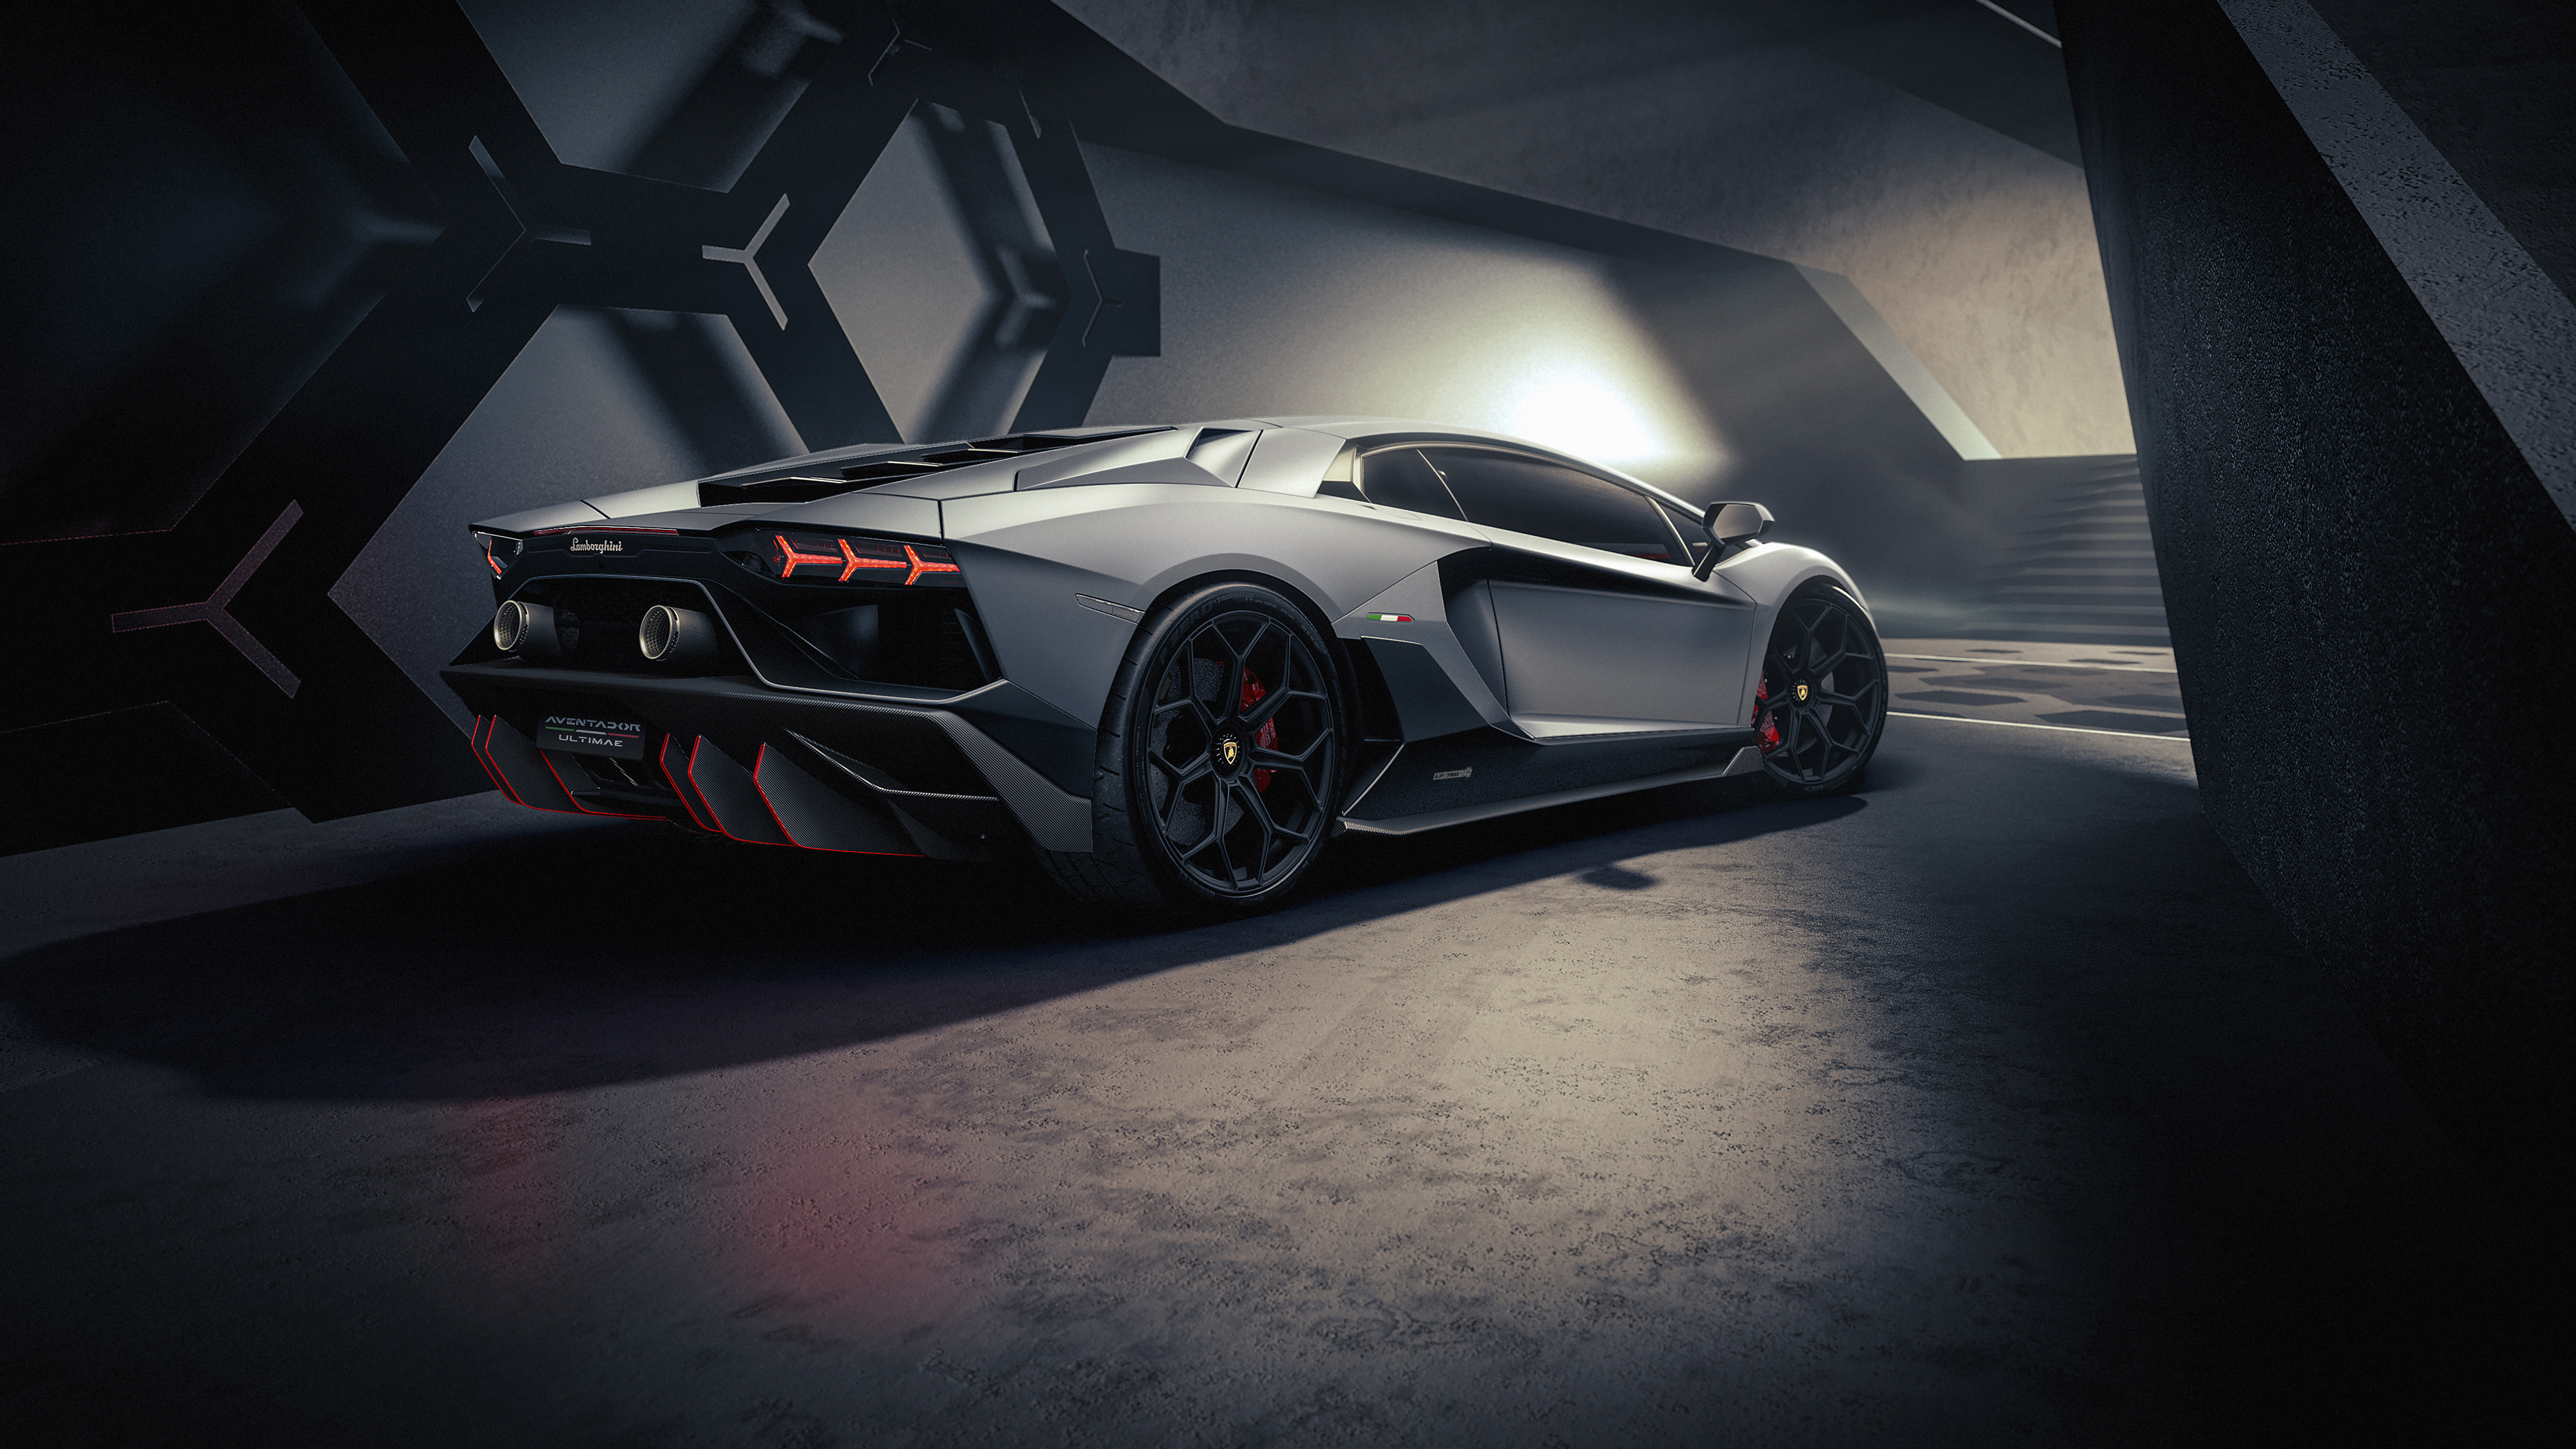 Một siêu phẩm không thể bỏ qua, Lamborghini Aventador LP 780-4 Ultimae mang đến cho bạn những trải nghiệm tuyệt vời nhất trên đường đua. Thiết kế đầy sức hút và đầy cá tính cùng với khả năng tăng tốc và tốc độ vượt trội. Hãy xem hình ảnh và cảm nhận sự mạnh mẽ và độc đáo của chiếc xe này.